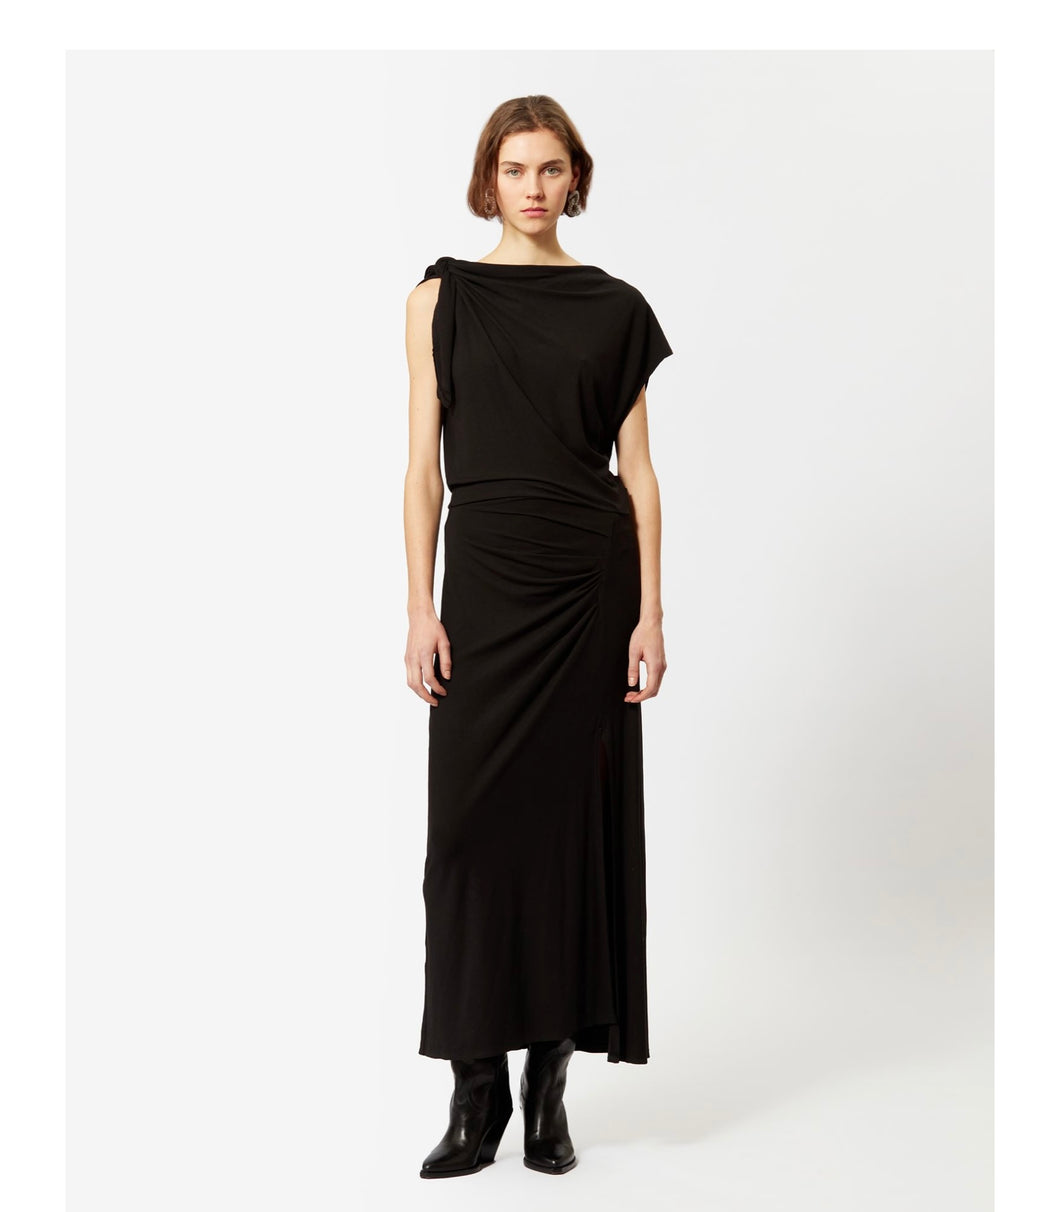 MARANT ETOILE black Naerys dress, SIZE 40